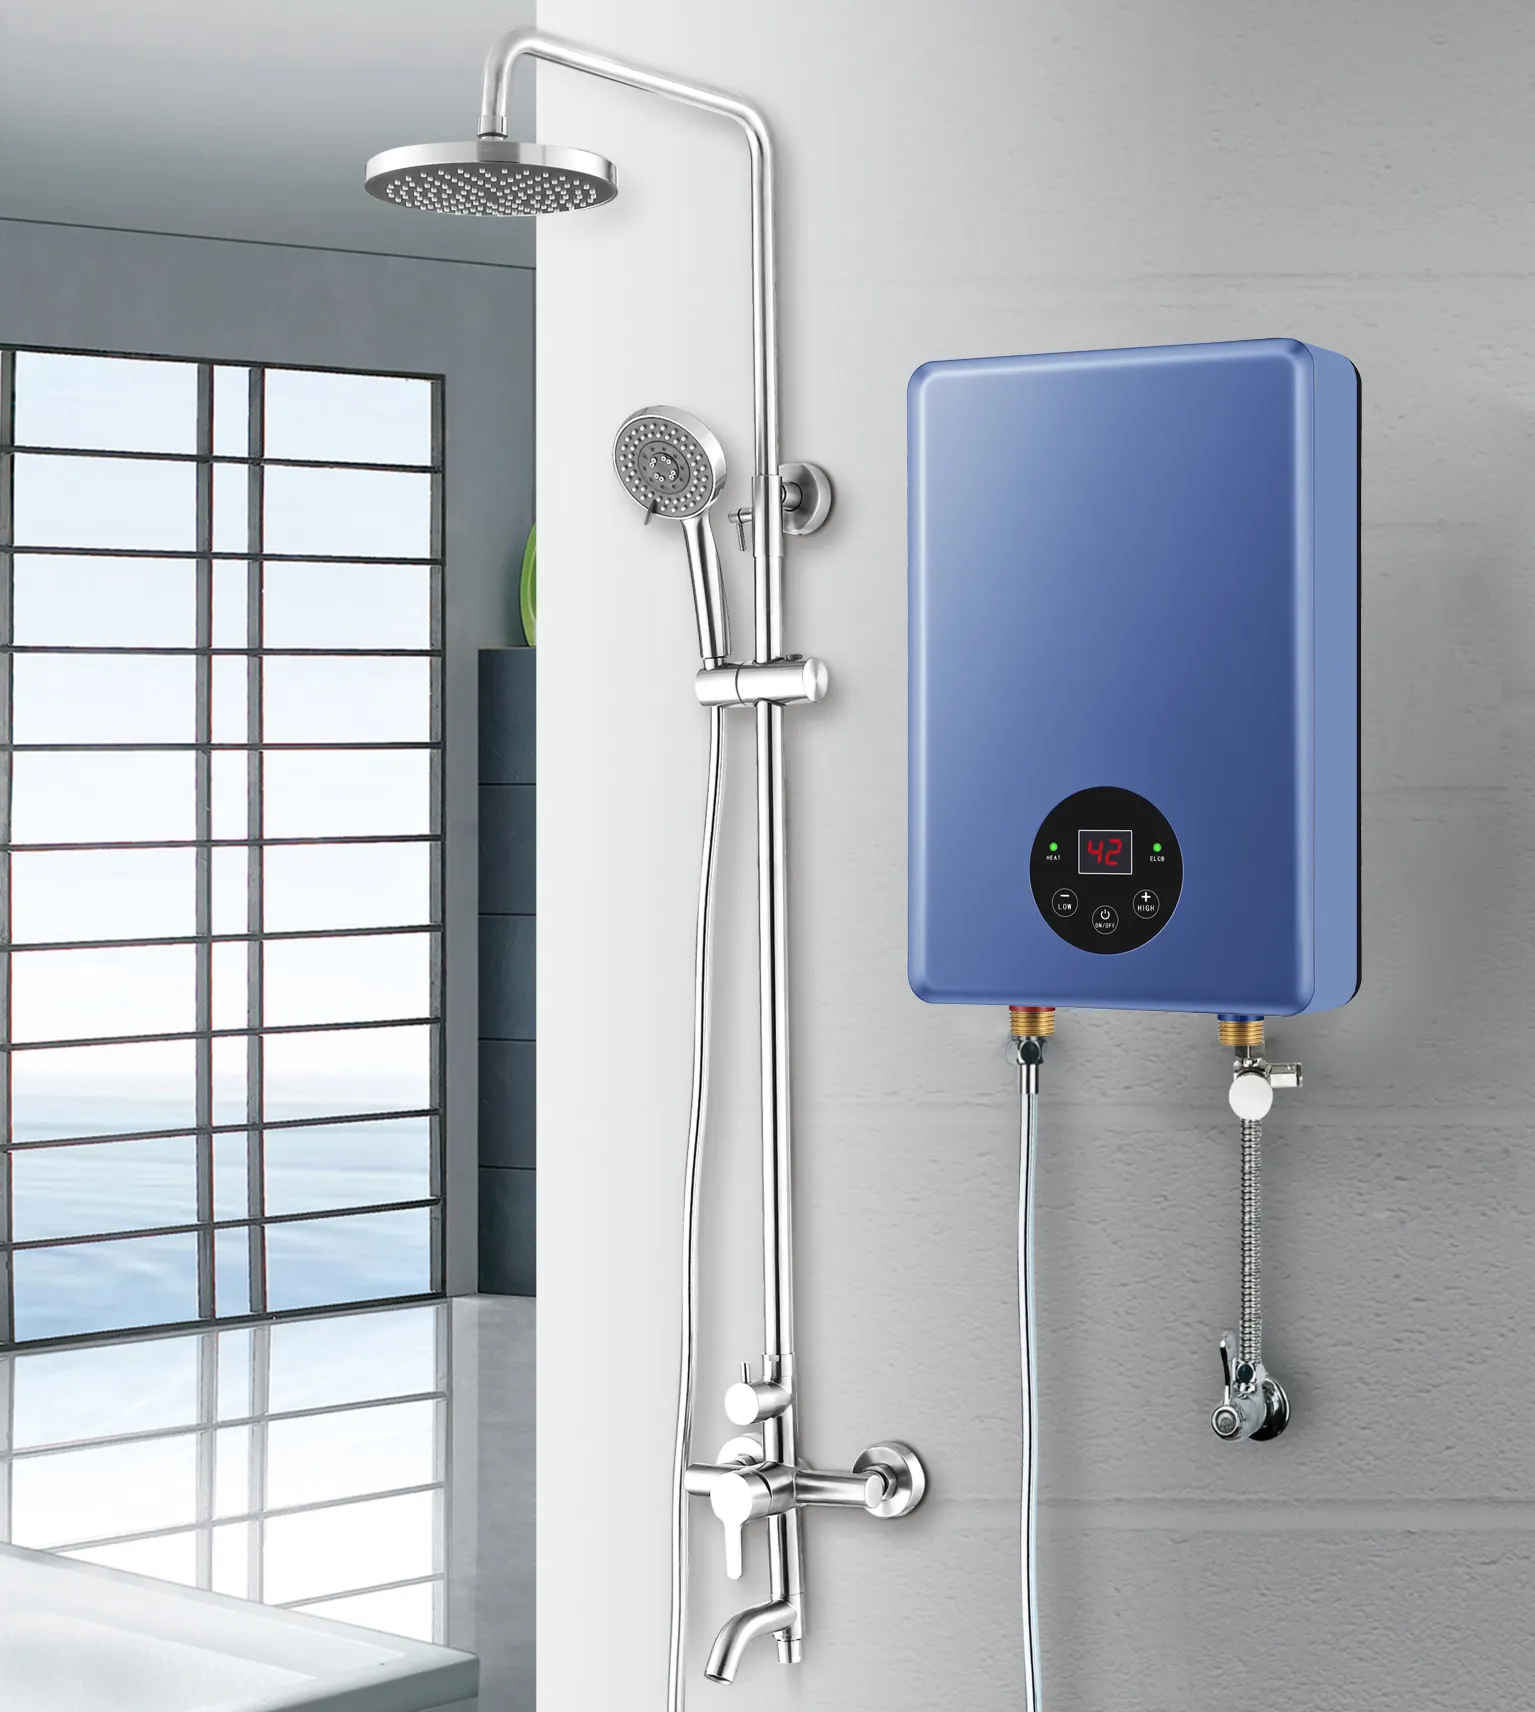 Chauffe-eau électrique à commande tactile pour la salle de bain, 220v, 3500w